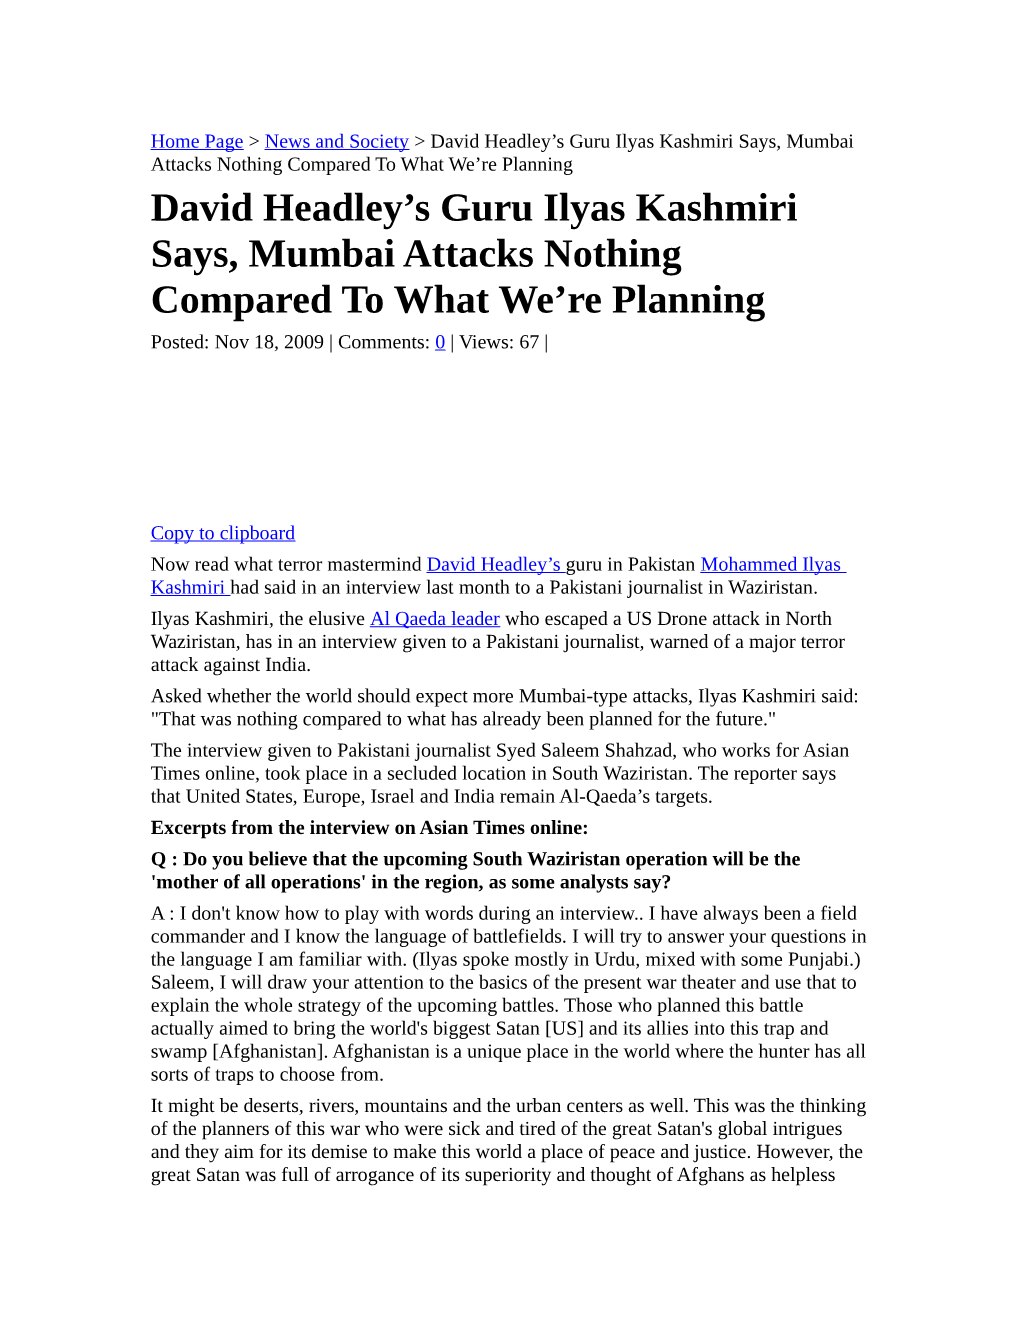 David Headley's Guru Ilyas Kashmiri Says, Mumbai Attacks Nothing